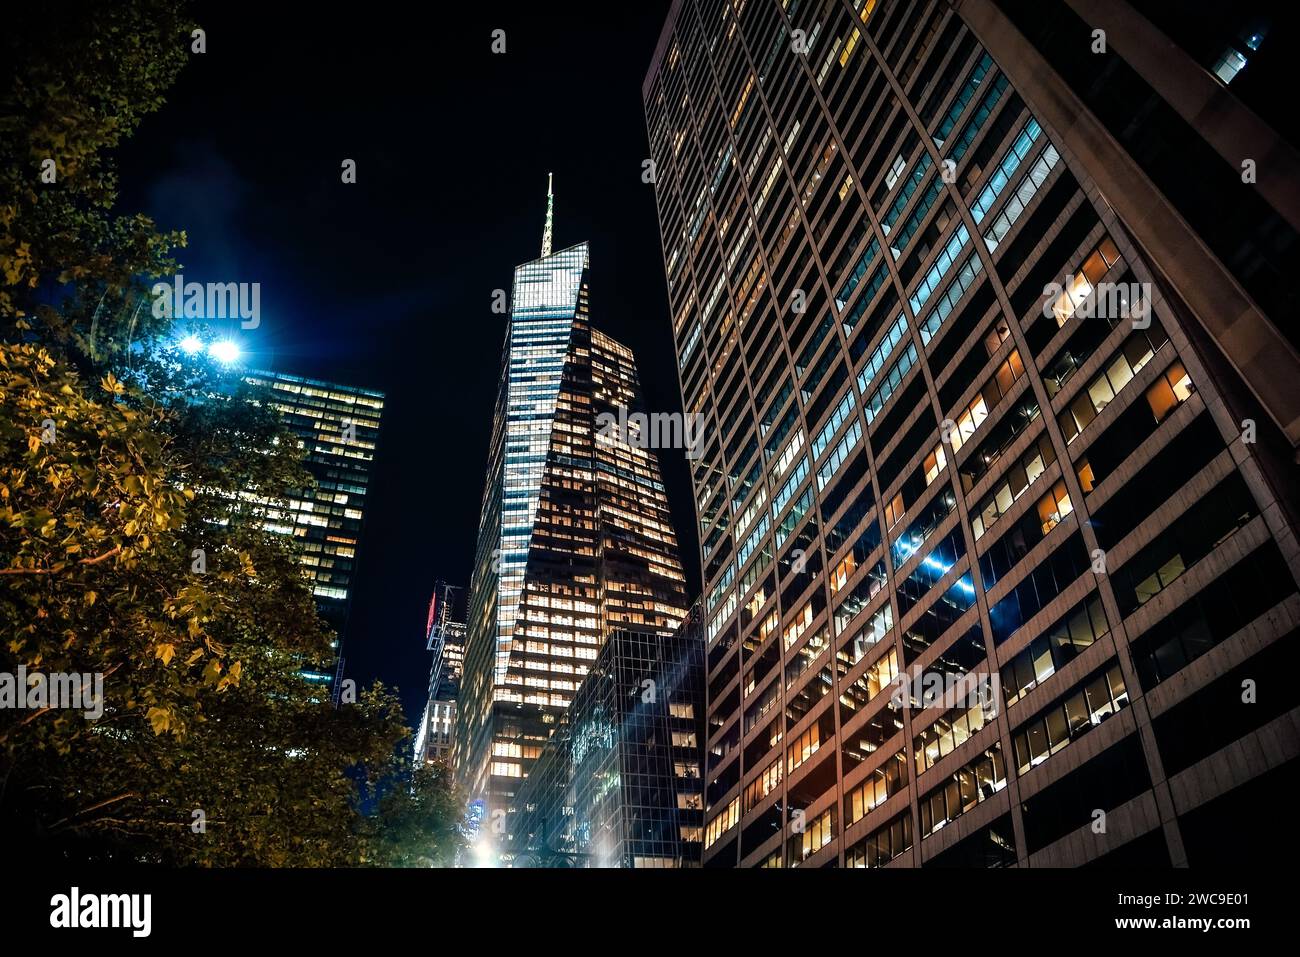 Vue nocturne de la tour Bank of America et du Grace Building depuis la 42e rue - Manhattan, New York Banque D'Images